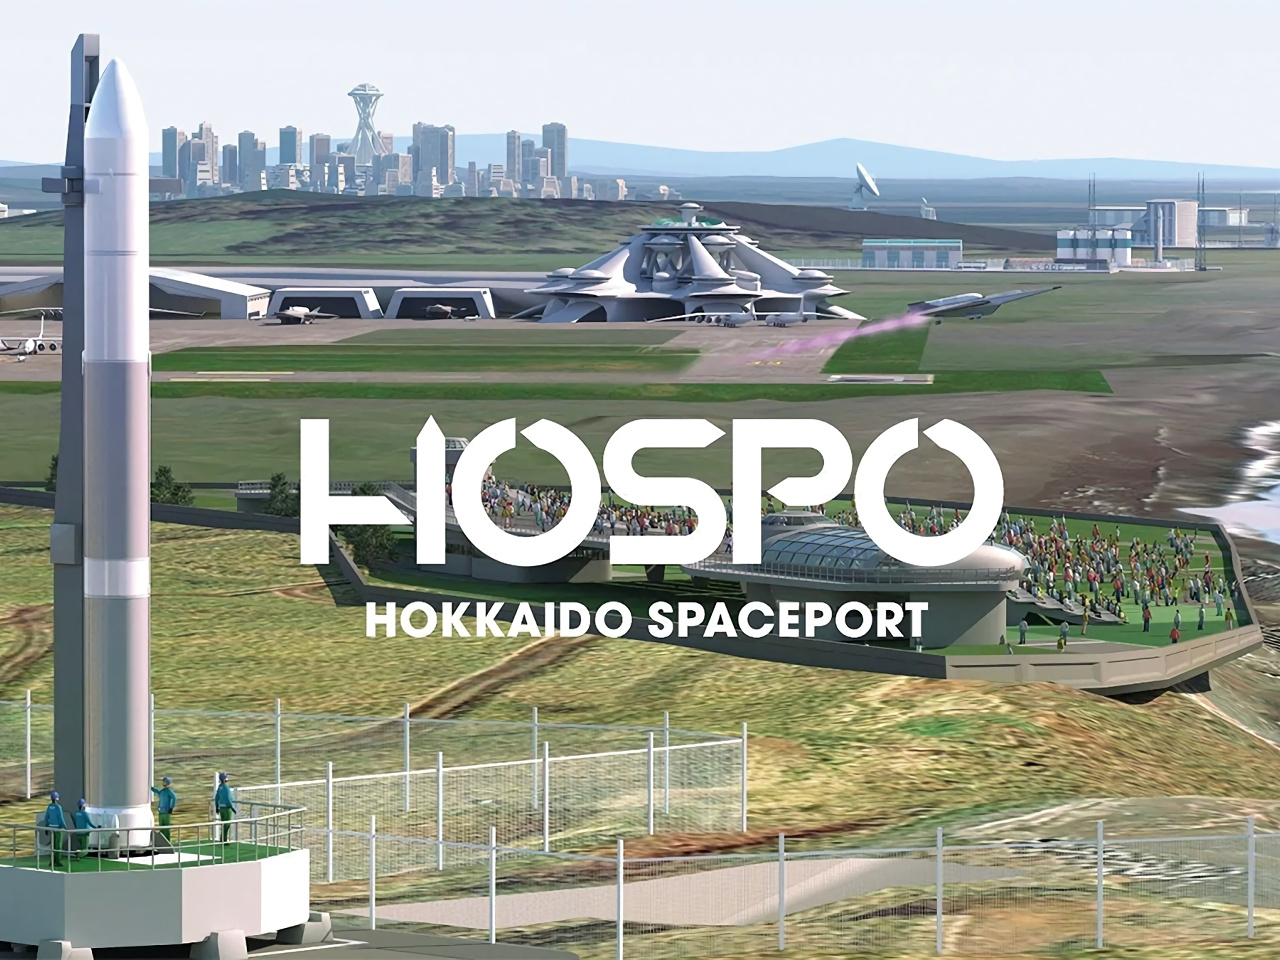 北海道宇宙港「HOSPO」に企業版ふるさと納税で1.3億円--3カ月で20社が寄付